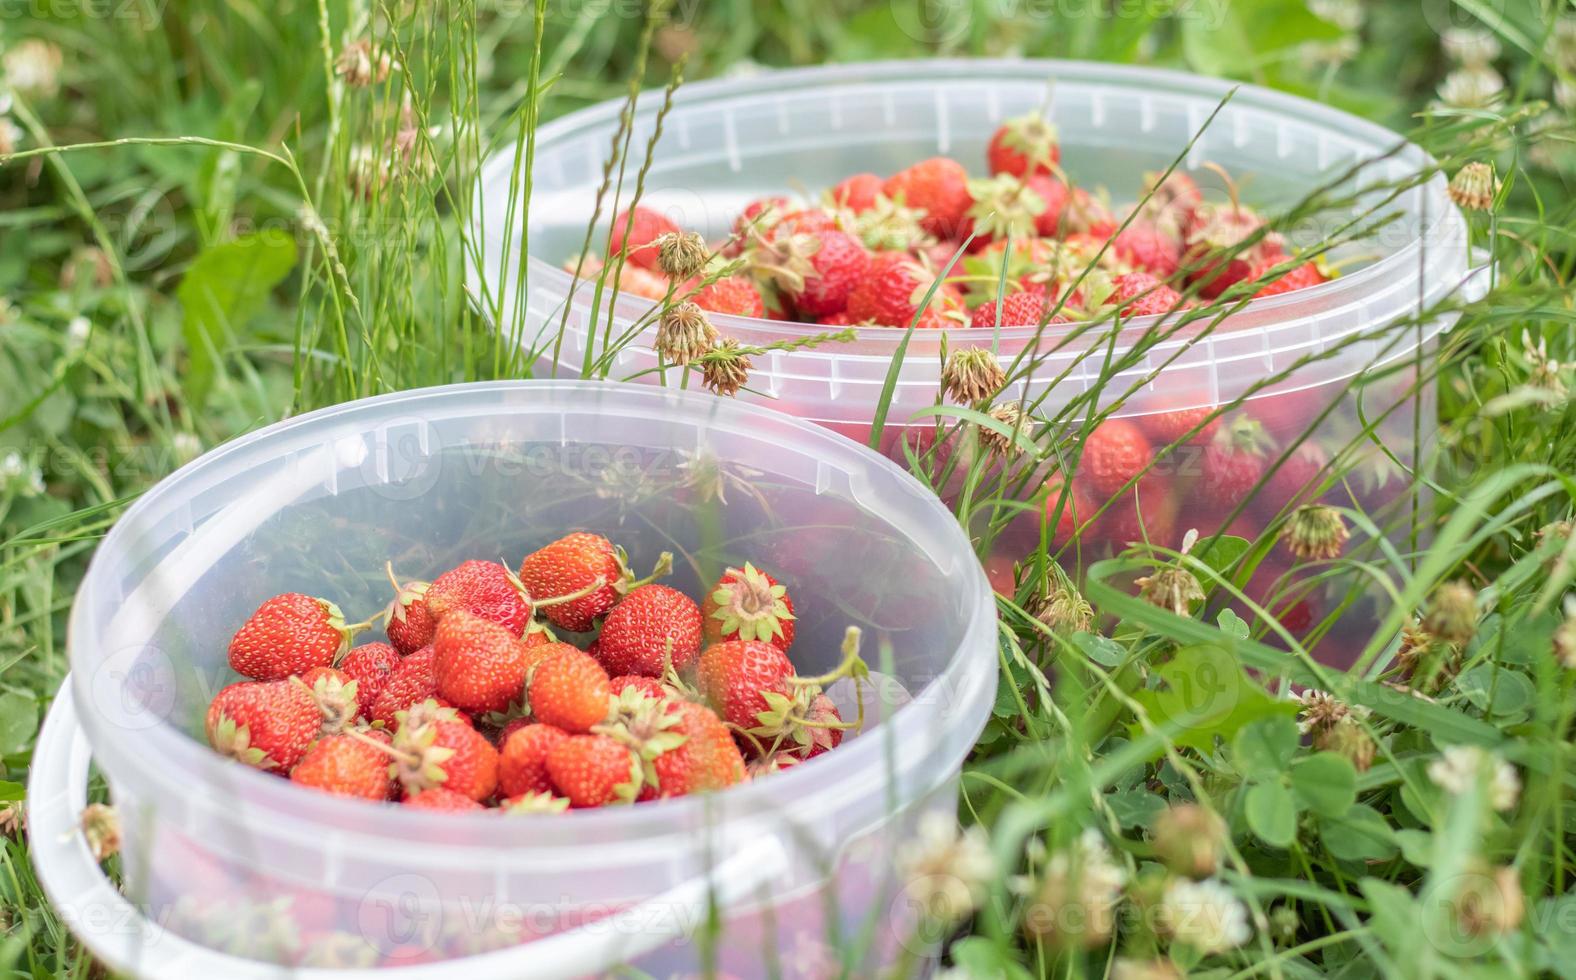 voller Eimer mit frisch gepflückten Erdbeeren im Sommergarten. Nahaufnahme von Erdbeeren in einem Plastikkorb. organische und frische Beeren auf einem Bauernmarkt, in einem Eimer auf einem Erdbeerbeet. foto